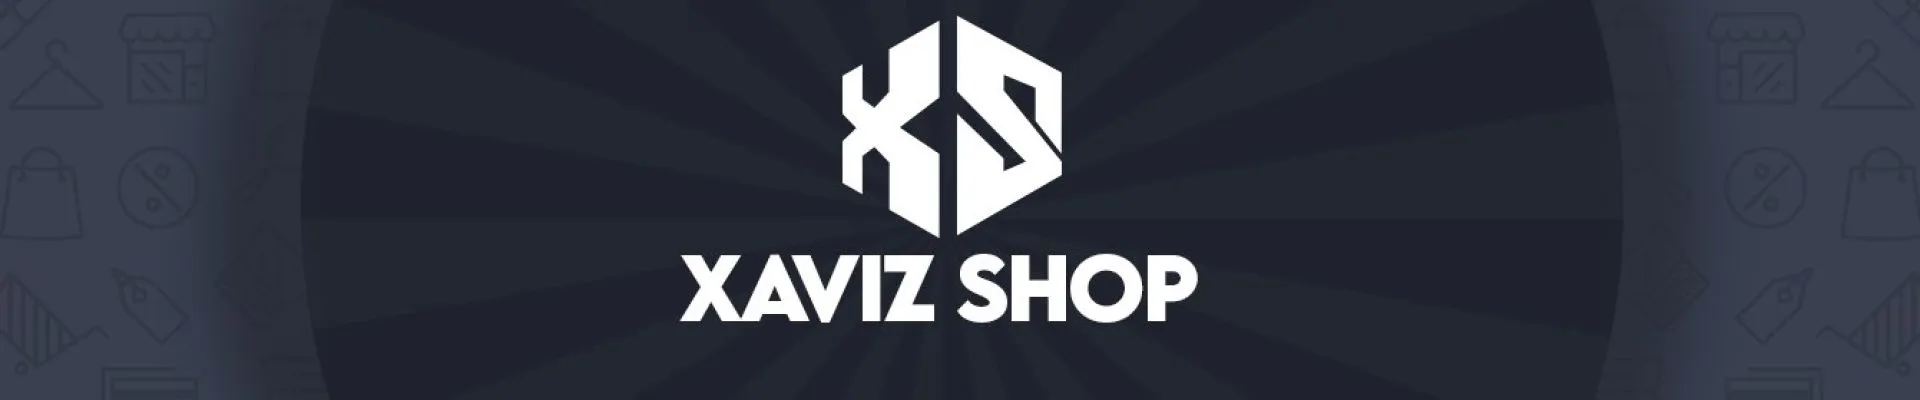 XavizShop kapak fotoğrafı